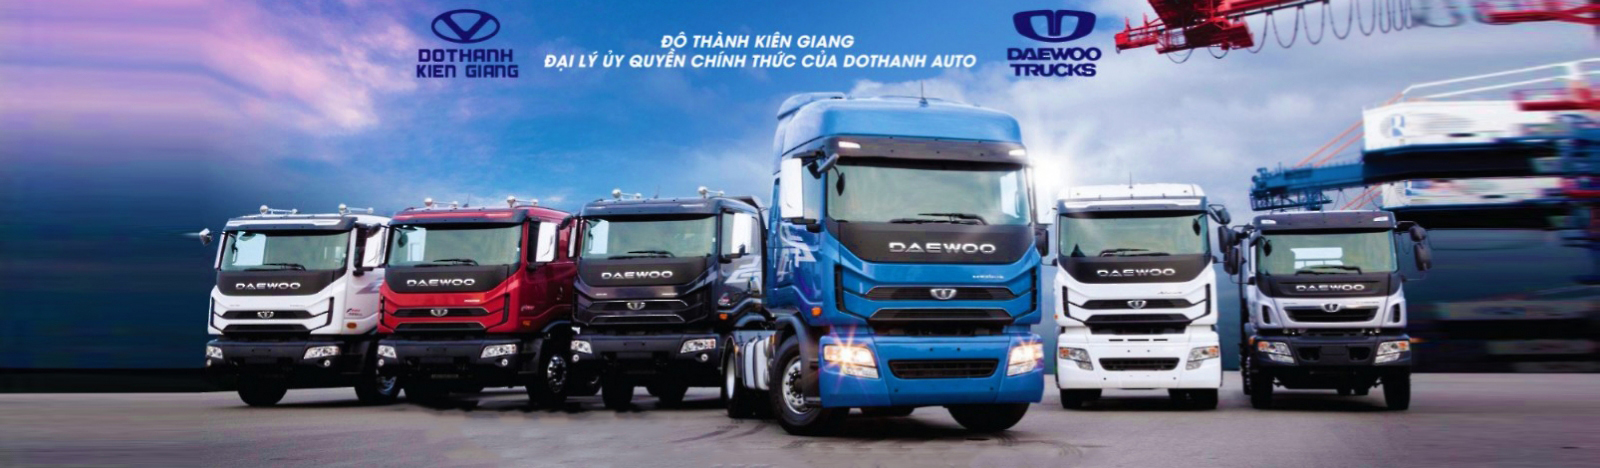 Đại lý Đô Thành Kiên Giang - Đại lý ủy quyền chính thức của DoThanh Auto tại Kiên Giang